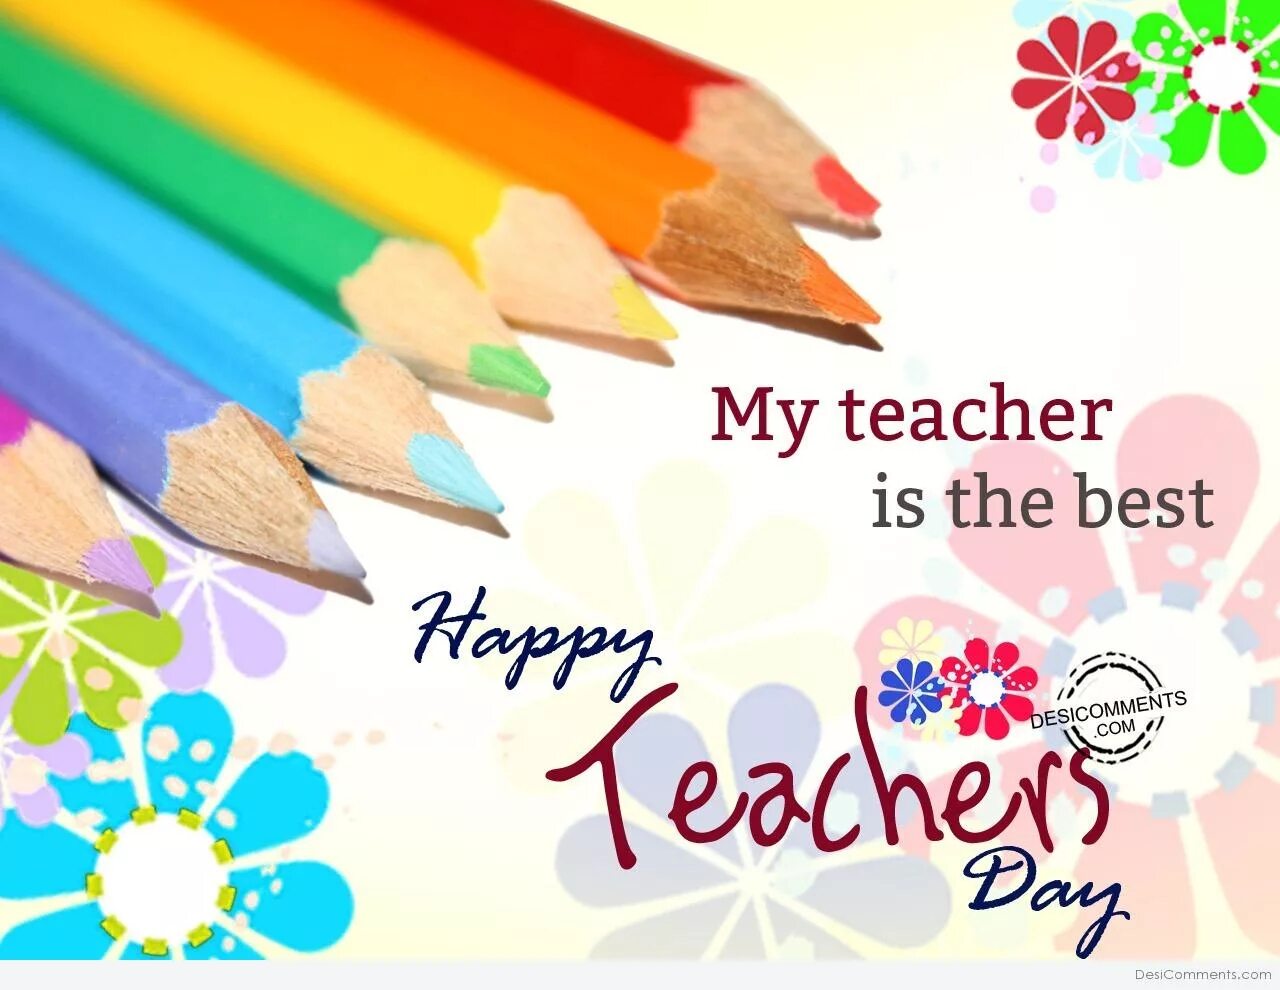 My good teach. Happy teacher's Day картинки. Открытка учителю на английском языке карандашом. Хэппи teaches Дэй. С днем учителя по английскому.